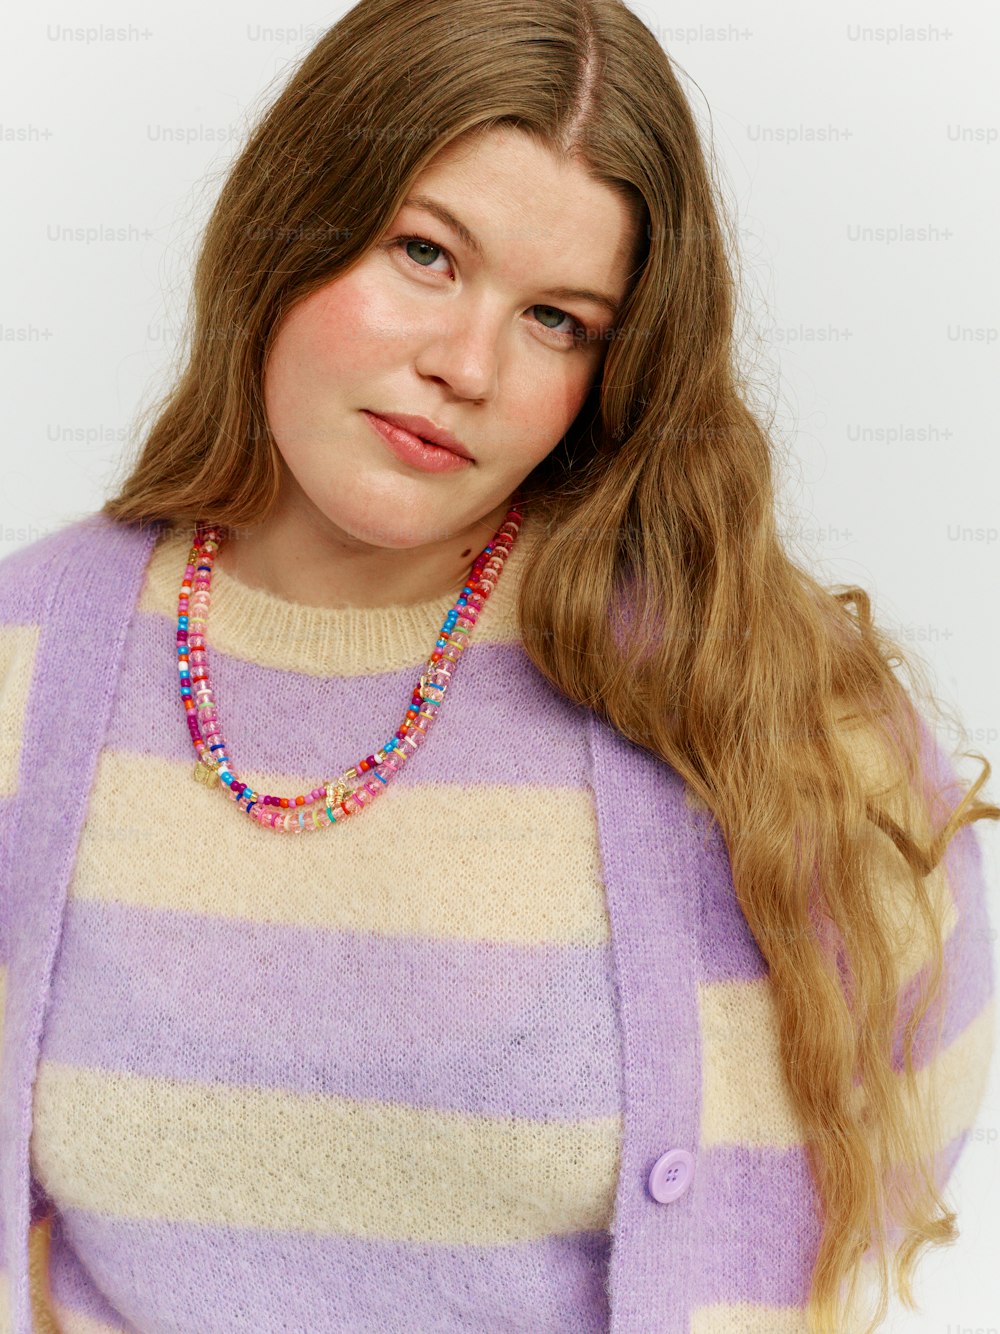 una donna con i capelli lunghi che indossa un maglione viola e bianco